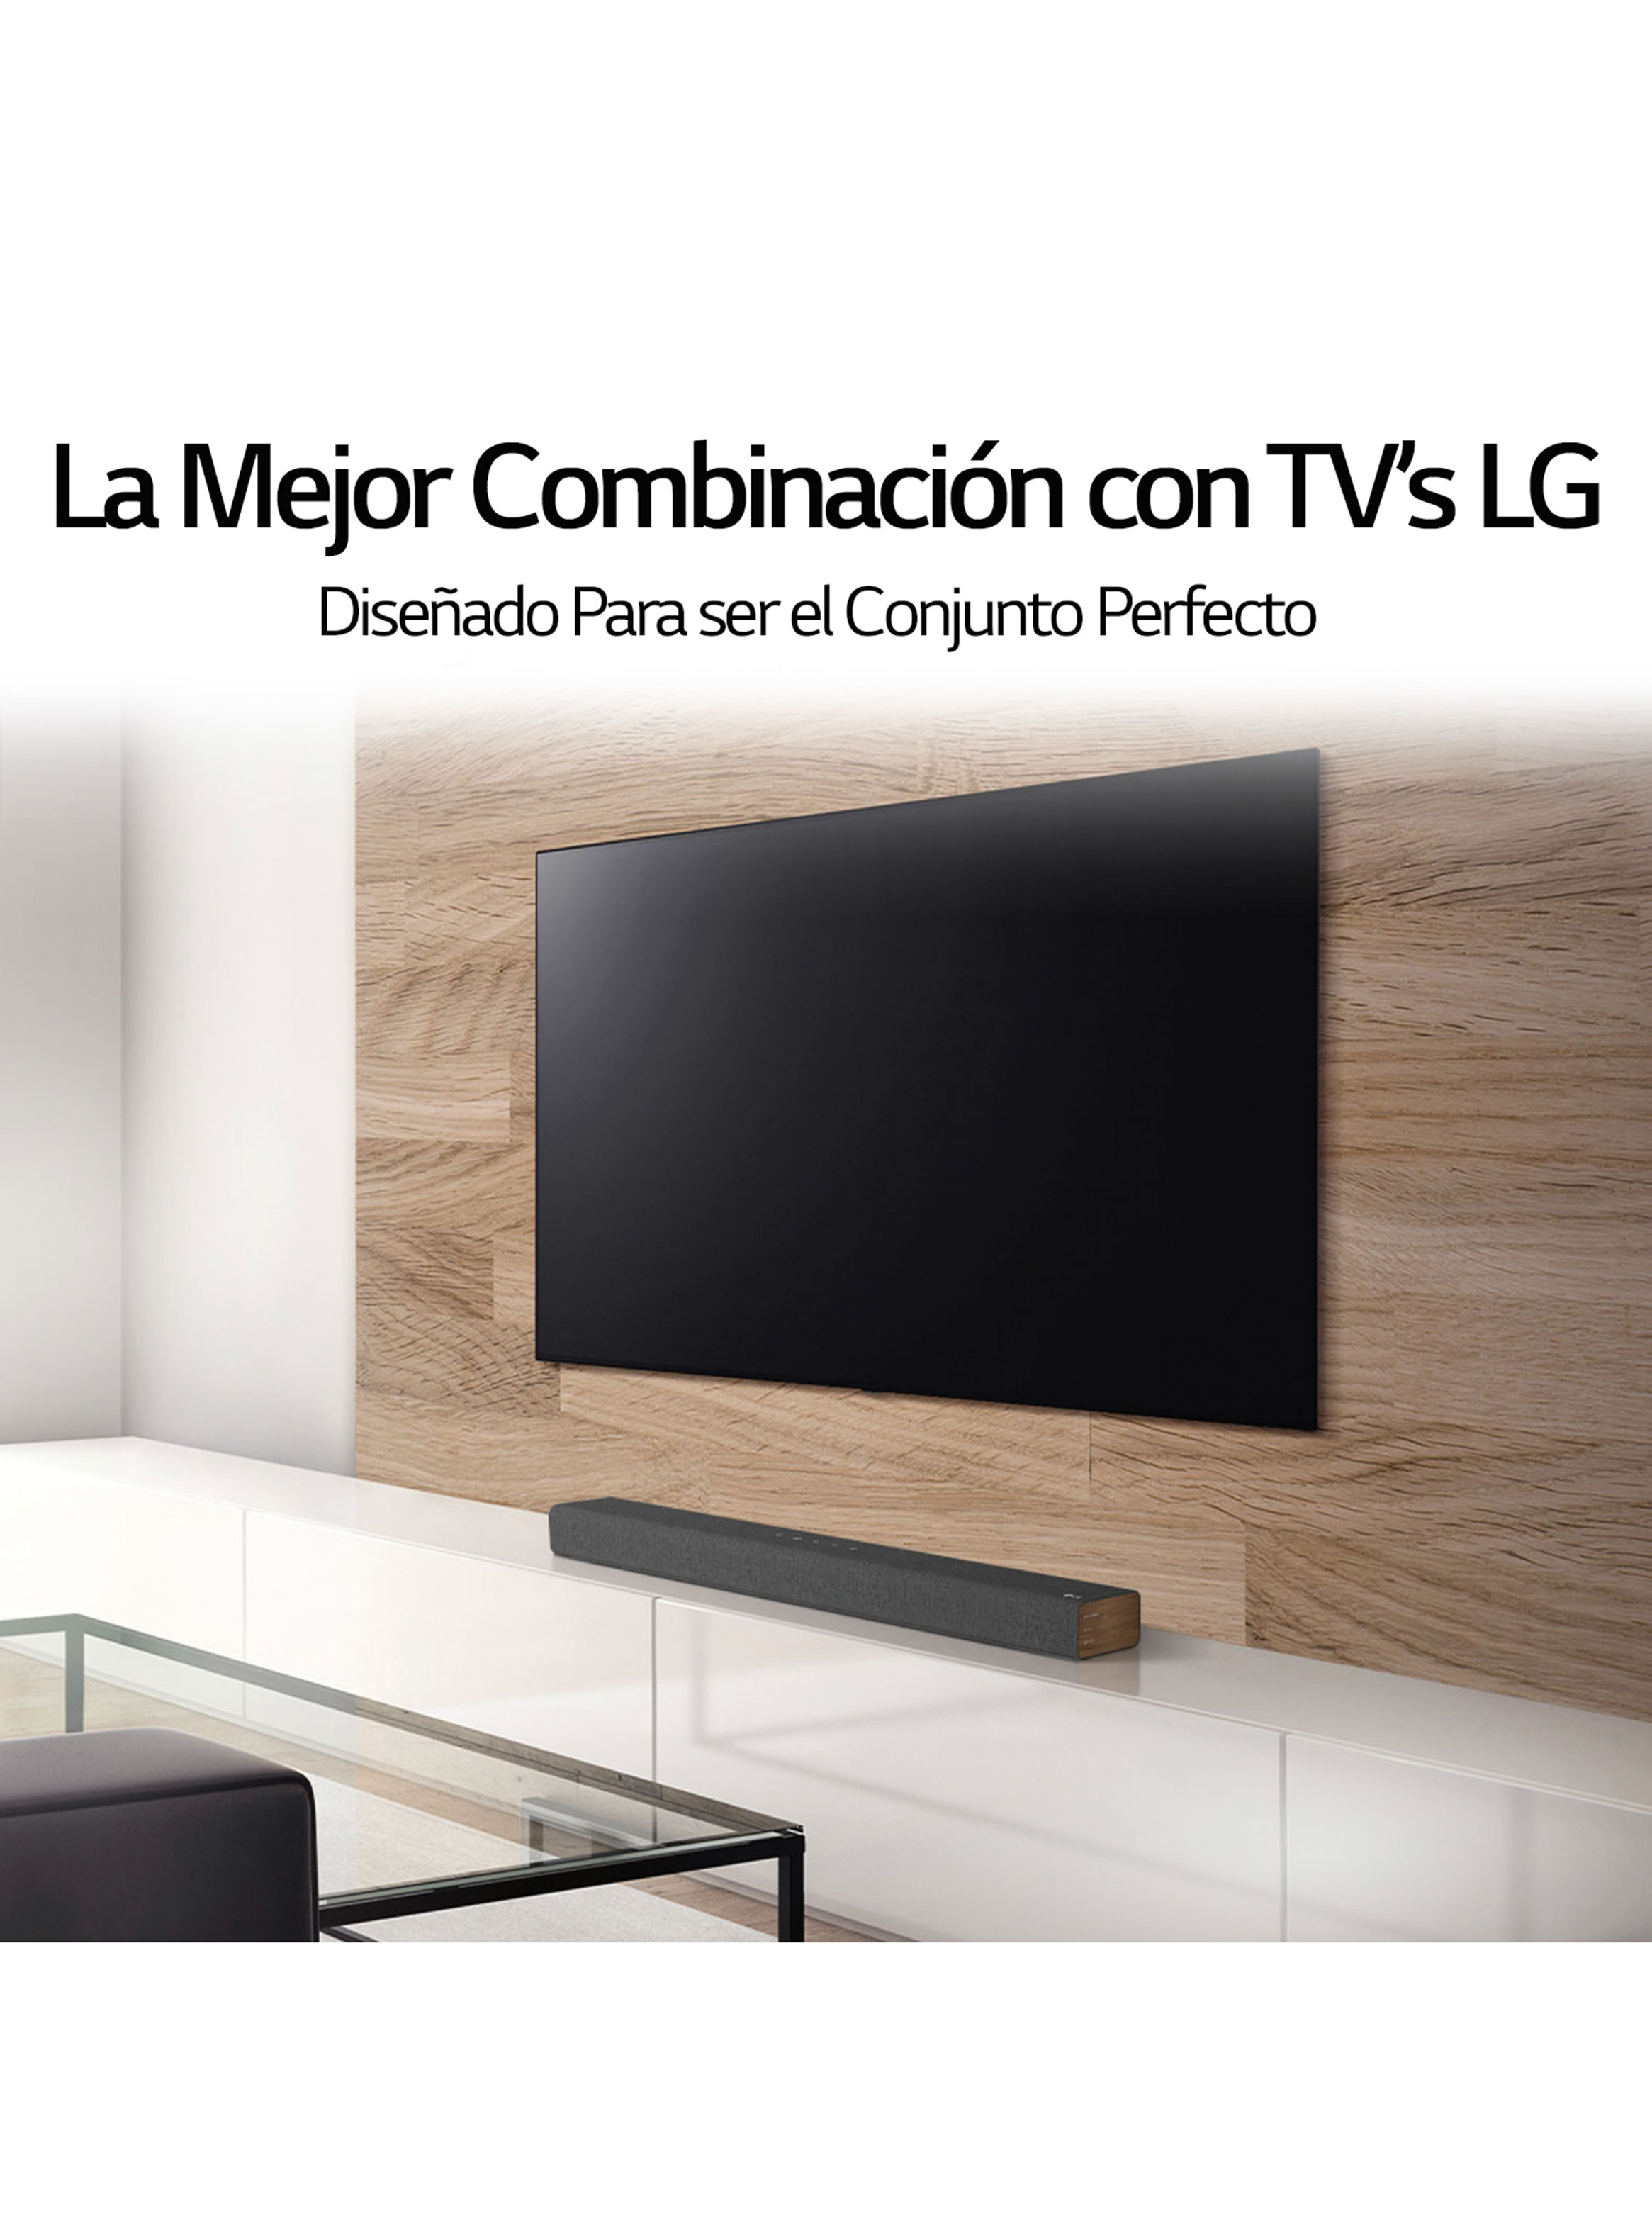 LED TV LG 65″ MODELO 65UP7750PSB – Fulltec